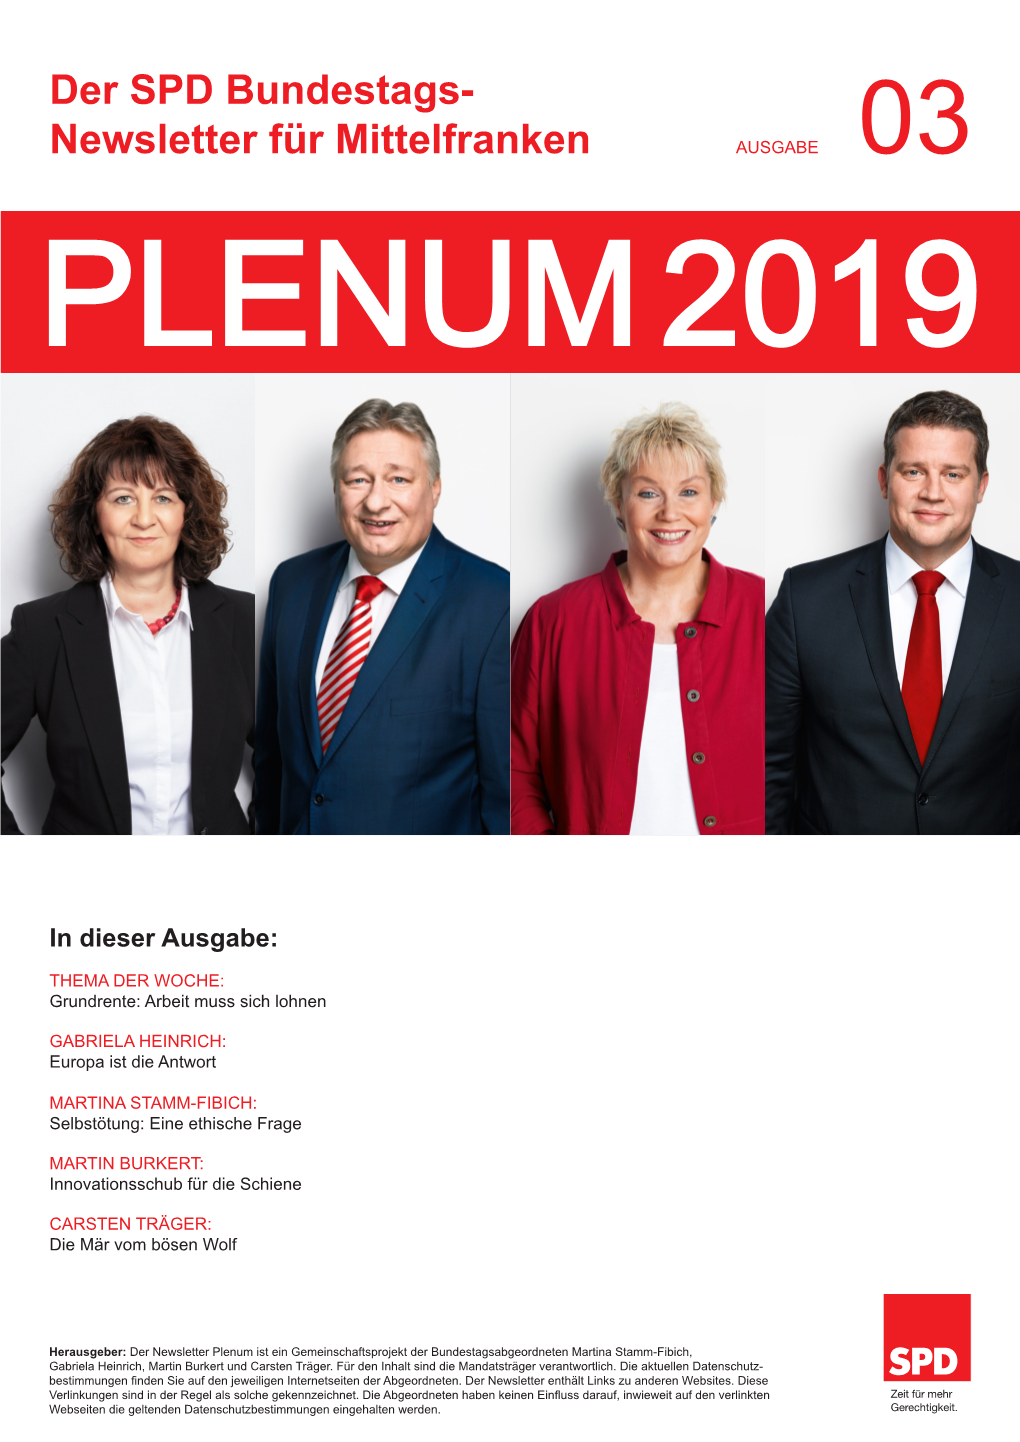 Der SPD Bundestags- Newsletter Für Mittelfranken AUSGABE 03 PLENUM 2019